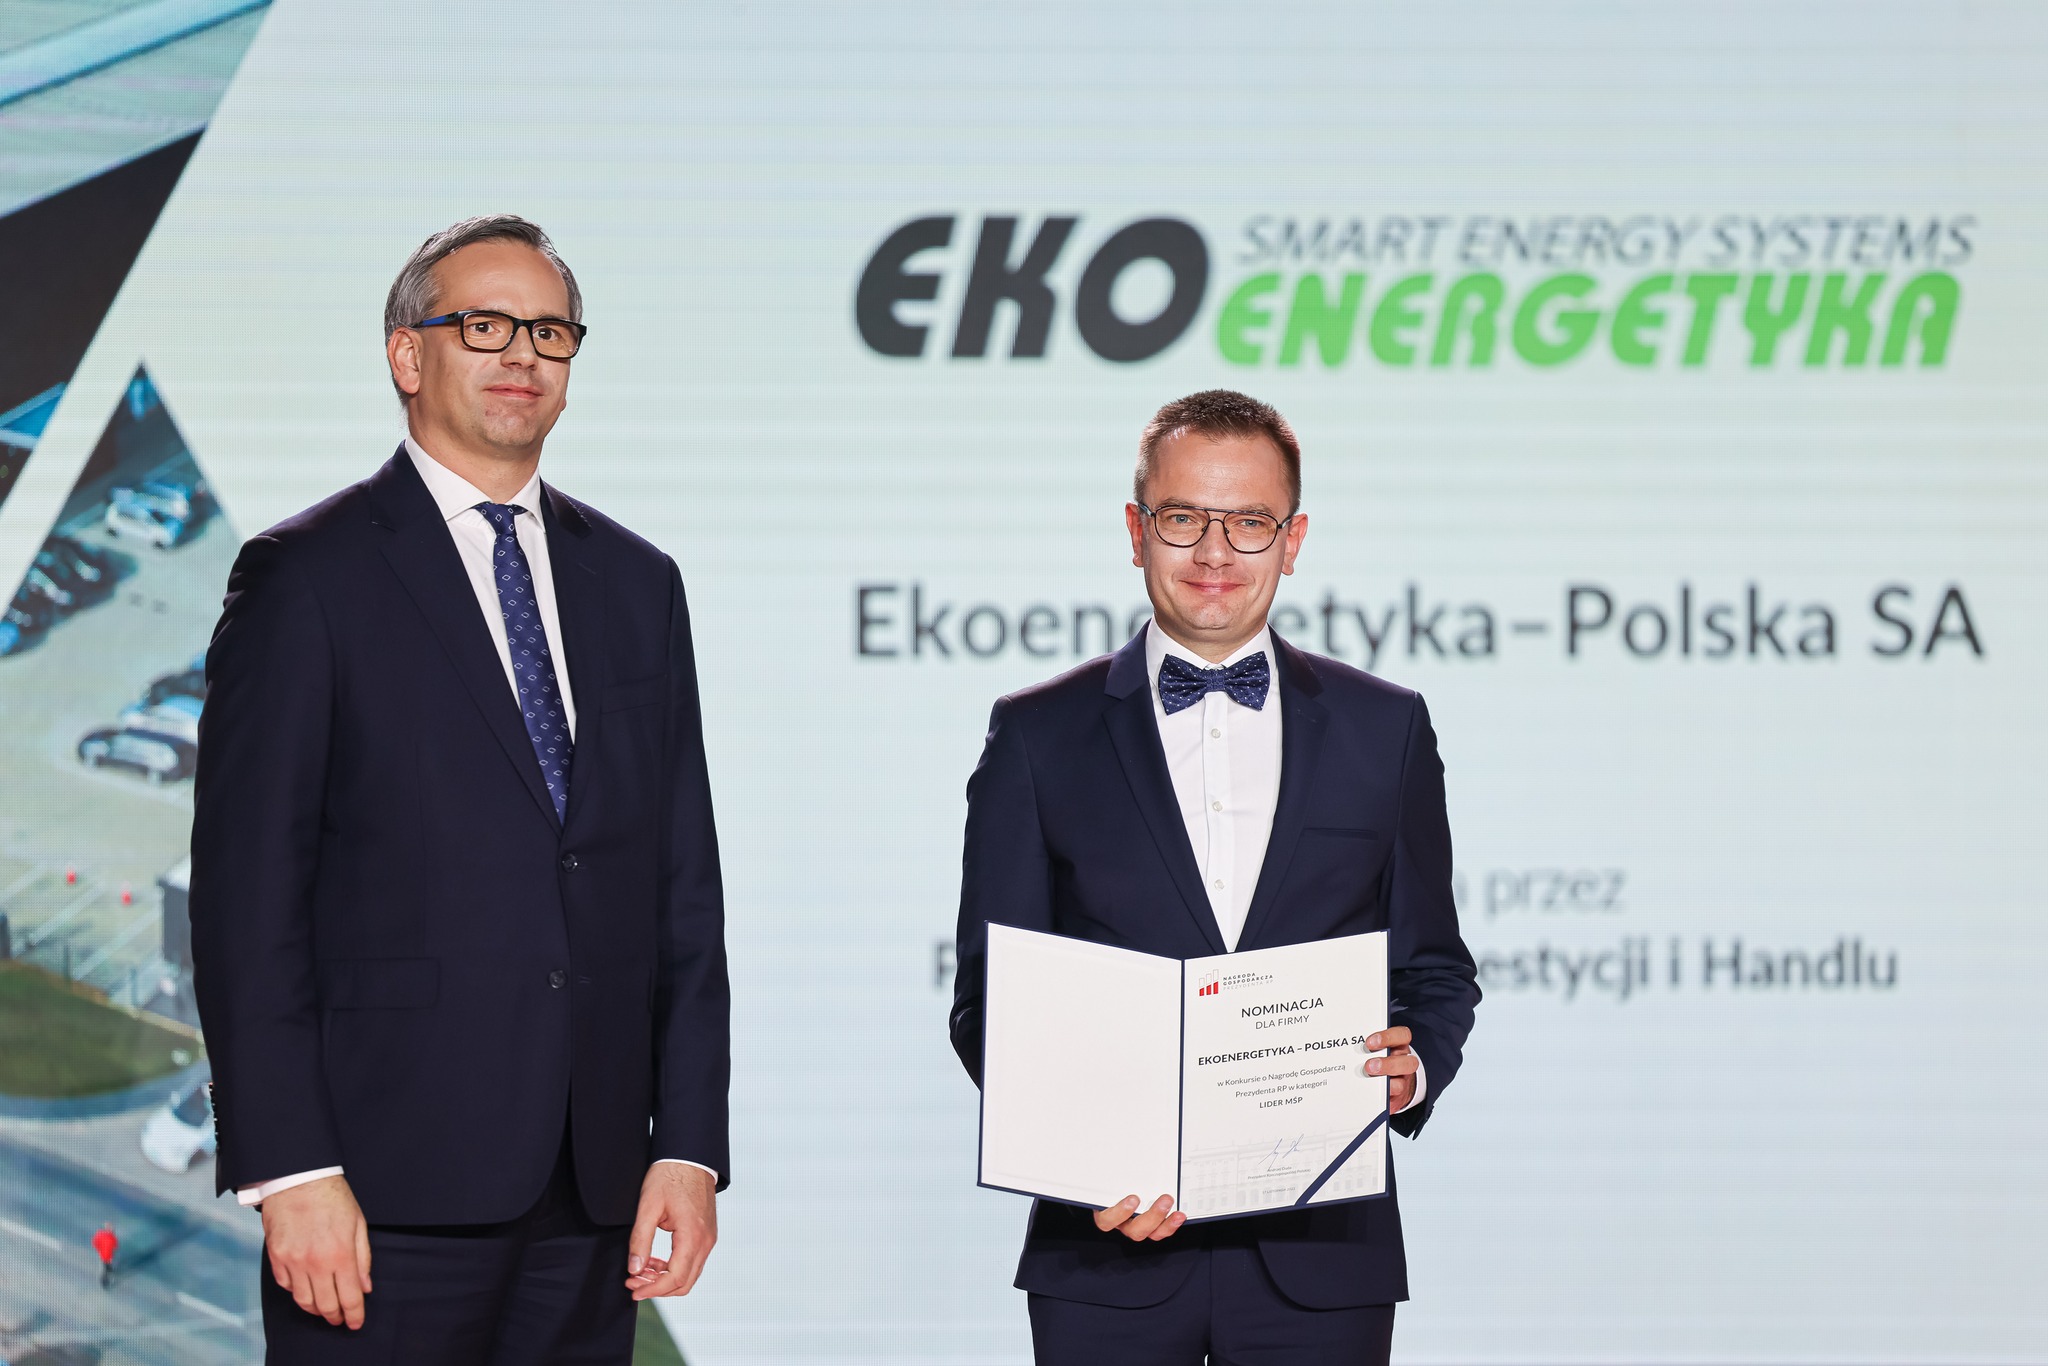 Ekoenergetyka-Polska – Preisträger des Wirtschaftspreises des Präsidenten der Republik Polen